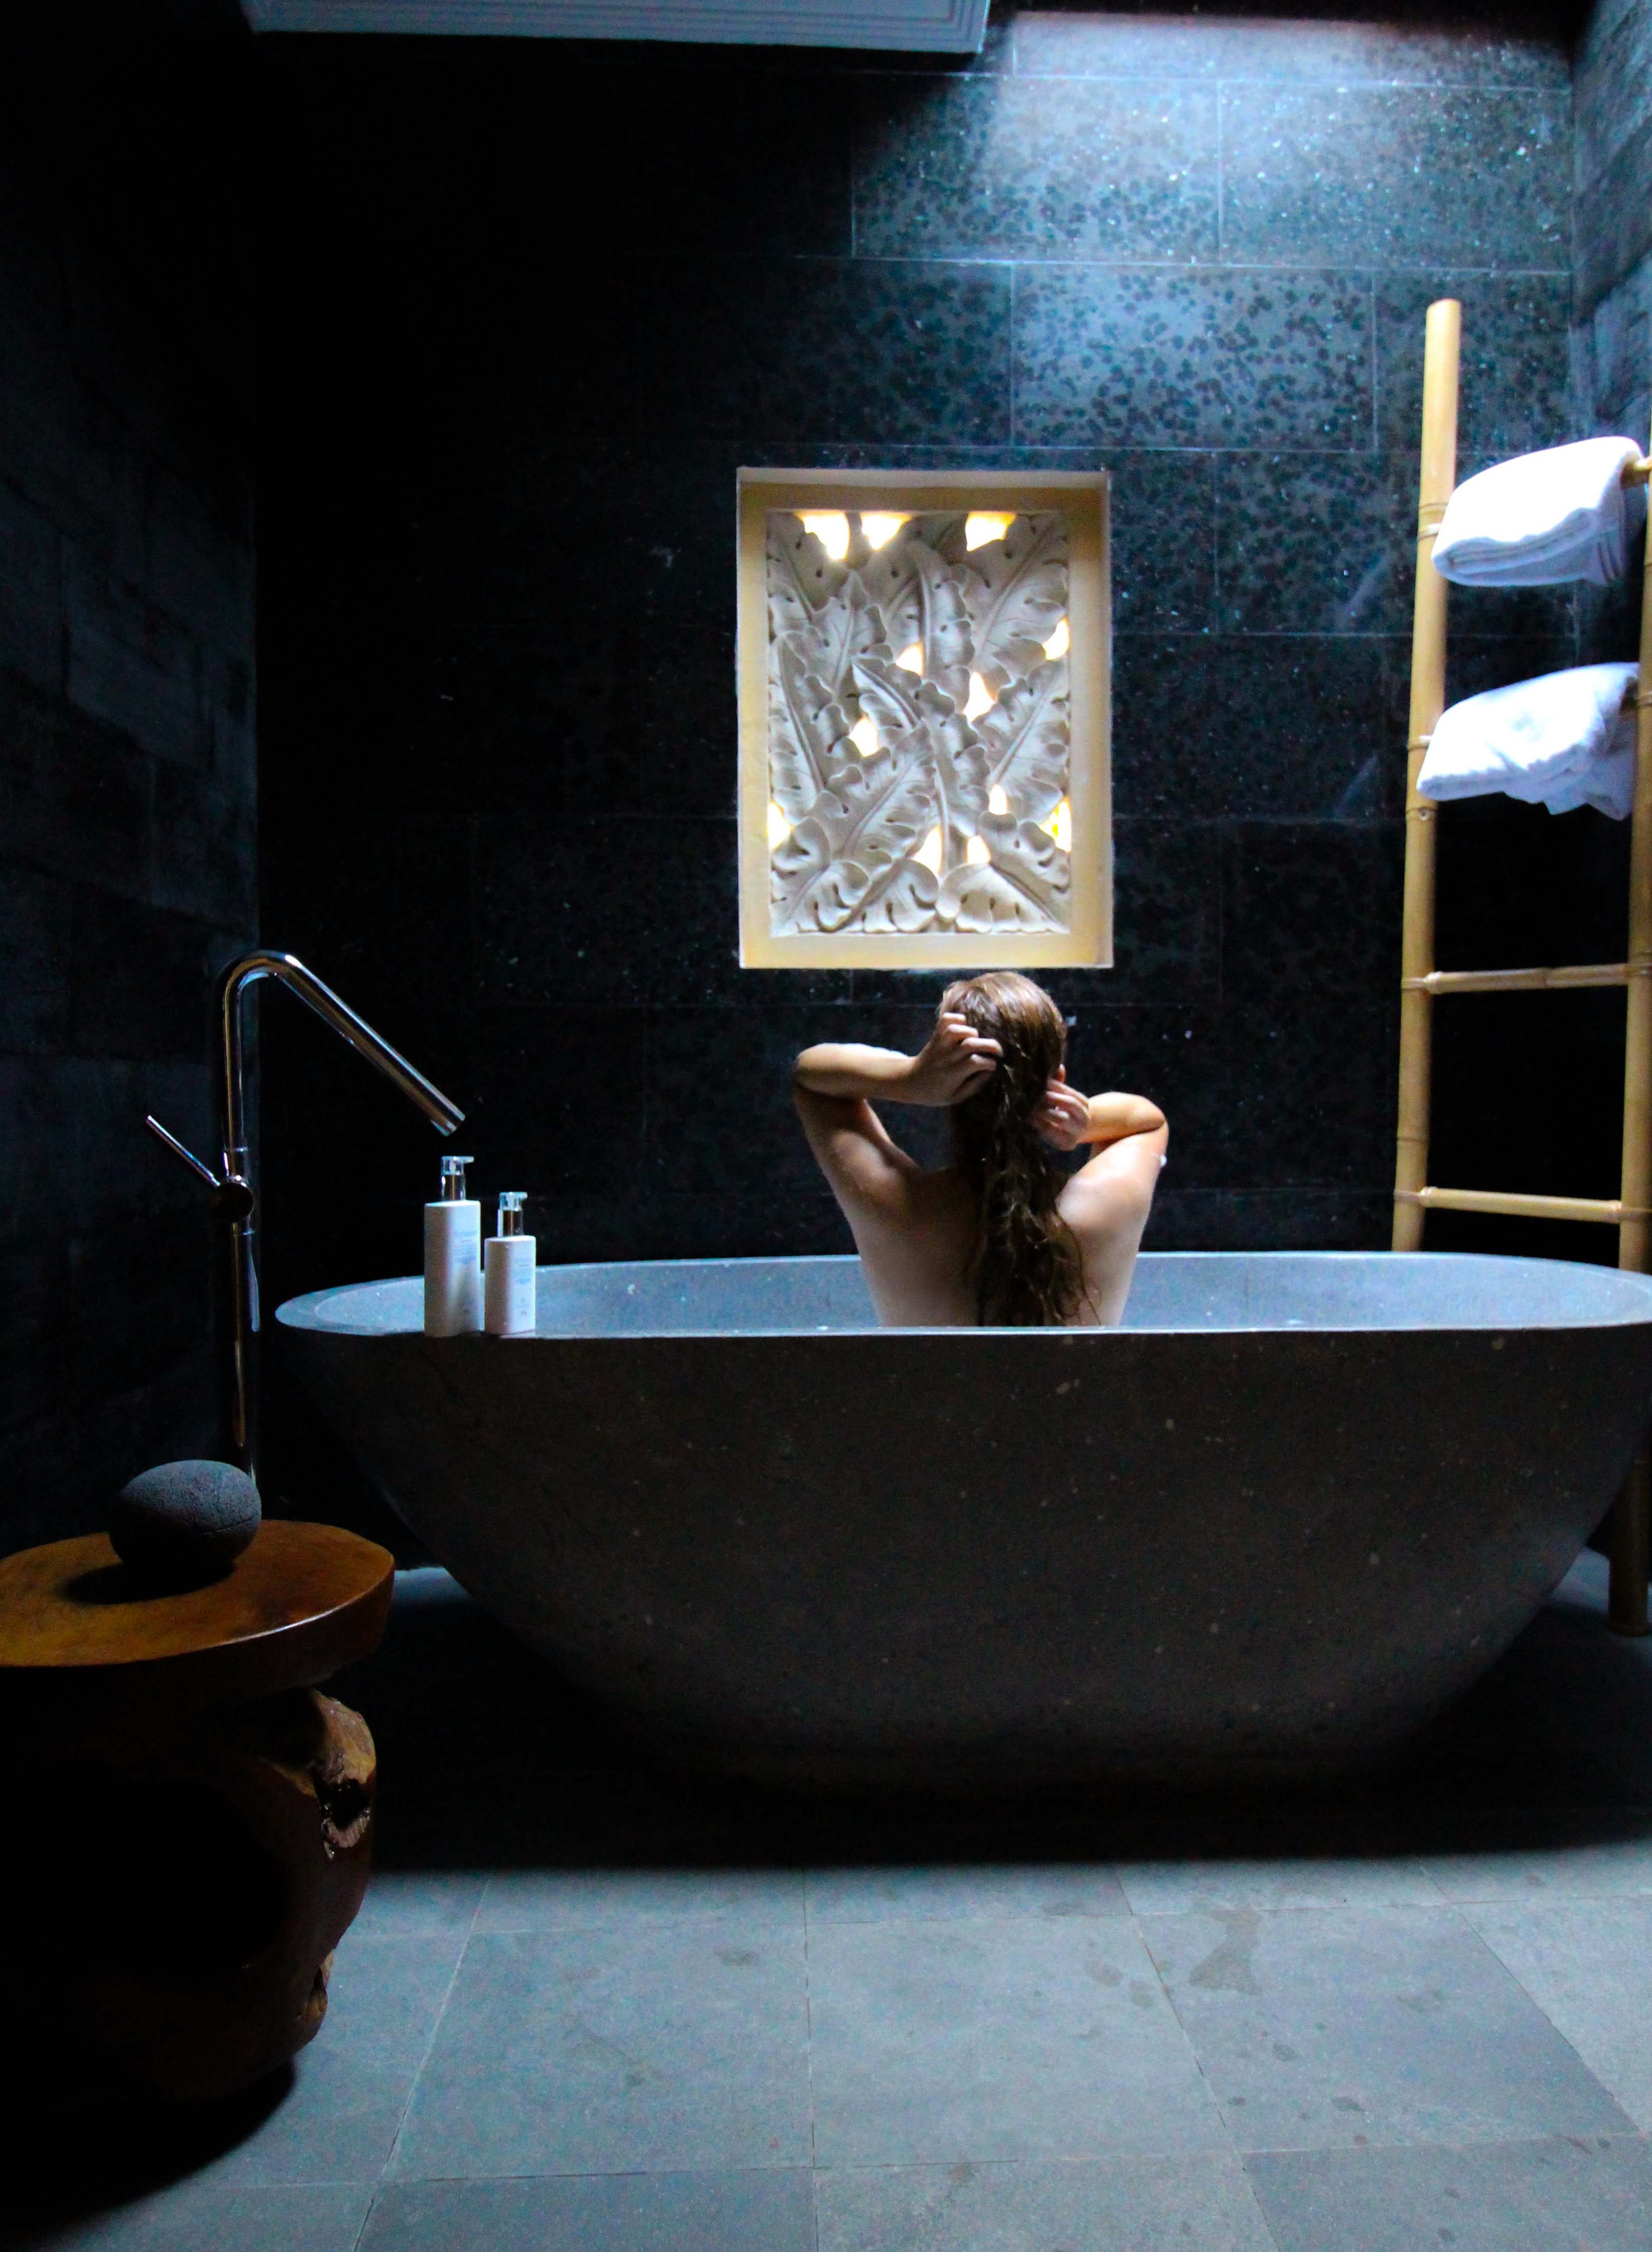 Haarpflege Halier Fortesse Shampoo Conditioner Test gesundes kräftiges Haar Beauty Blog Bali freistehende Badewanne